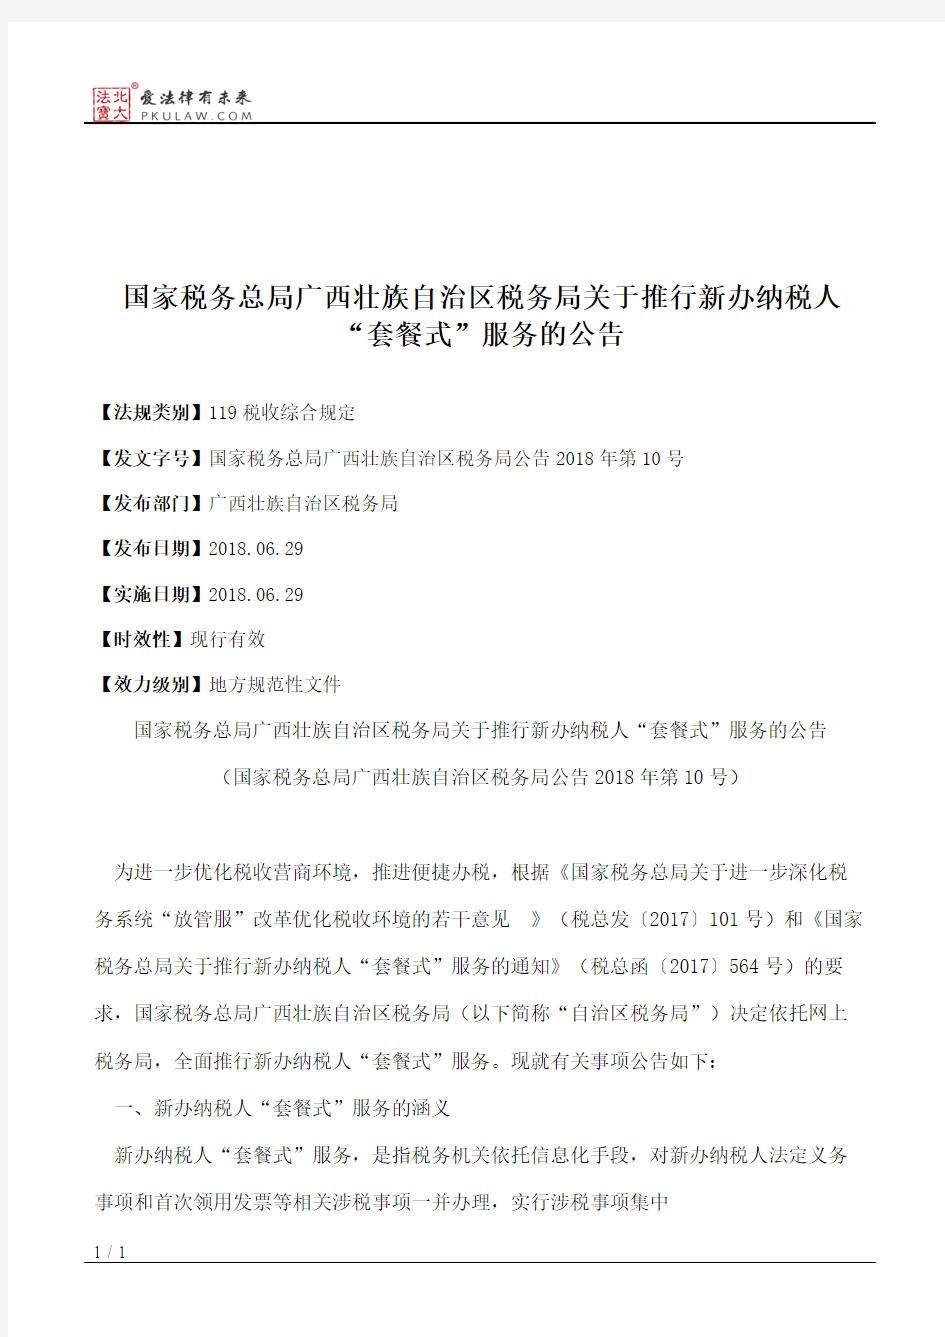 国家税务总局广西壮族自治区税务局关于推行新办纳税人“套餐式”